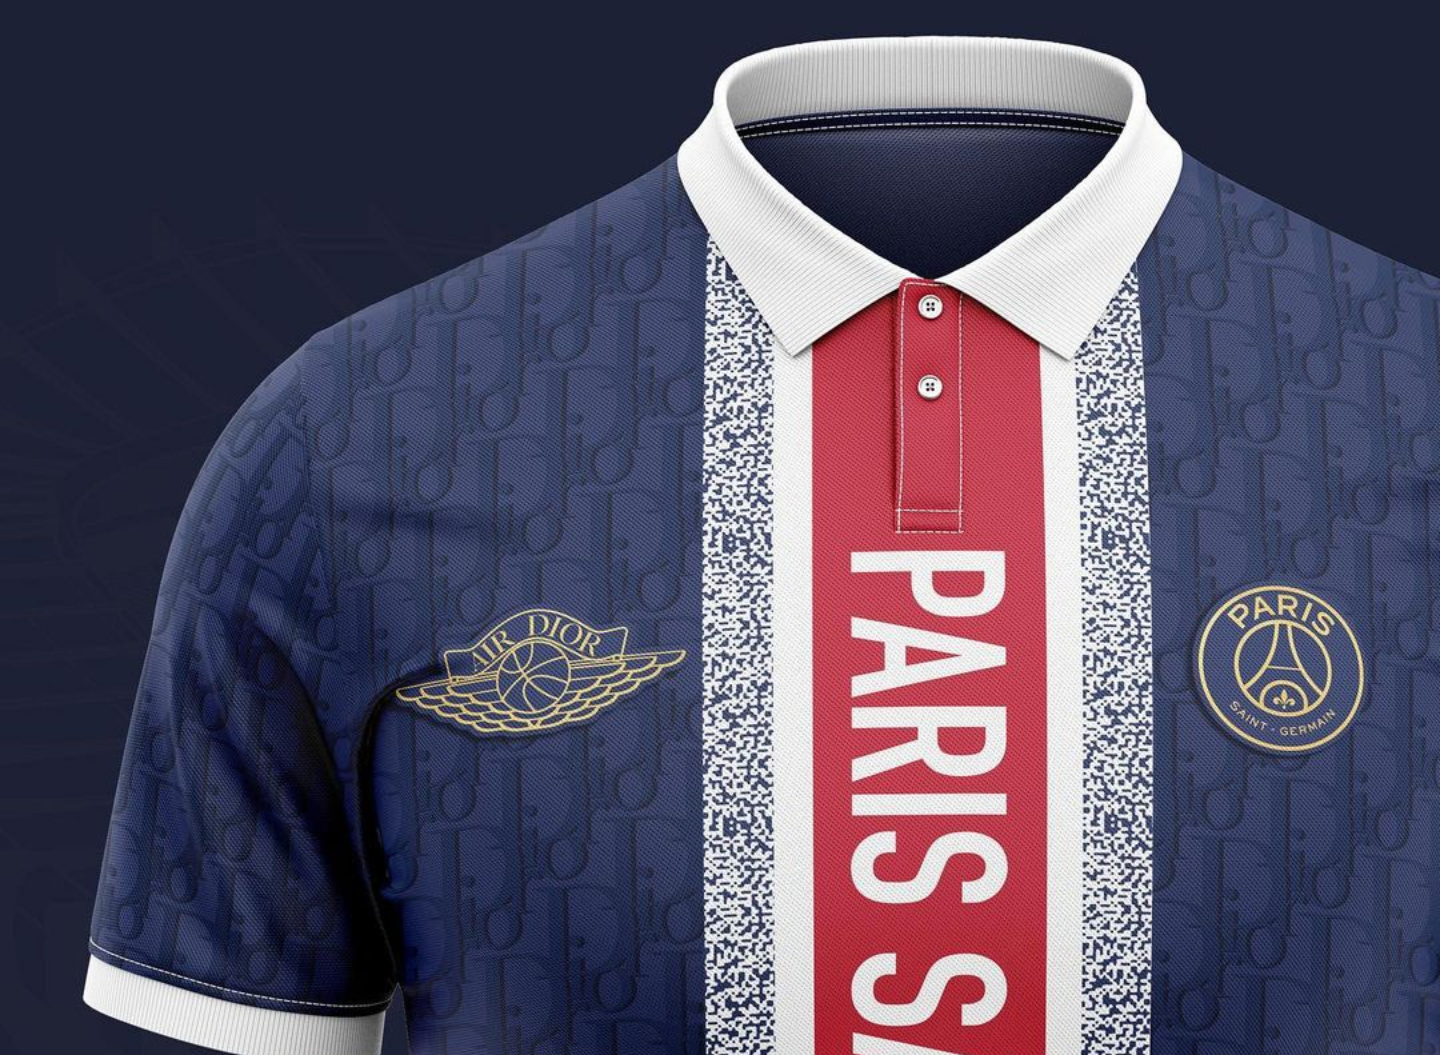 PSG x Dior  deux magnifiques maillots imaginés par un designer